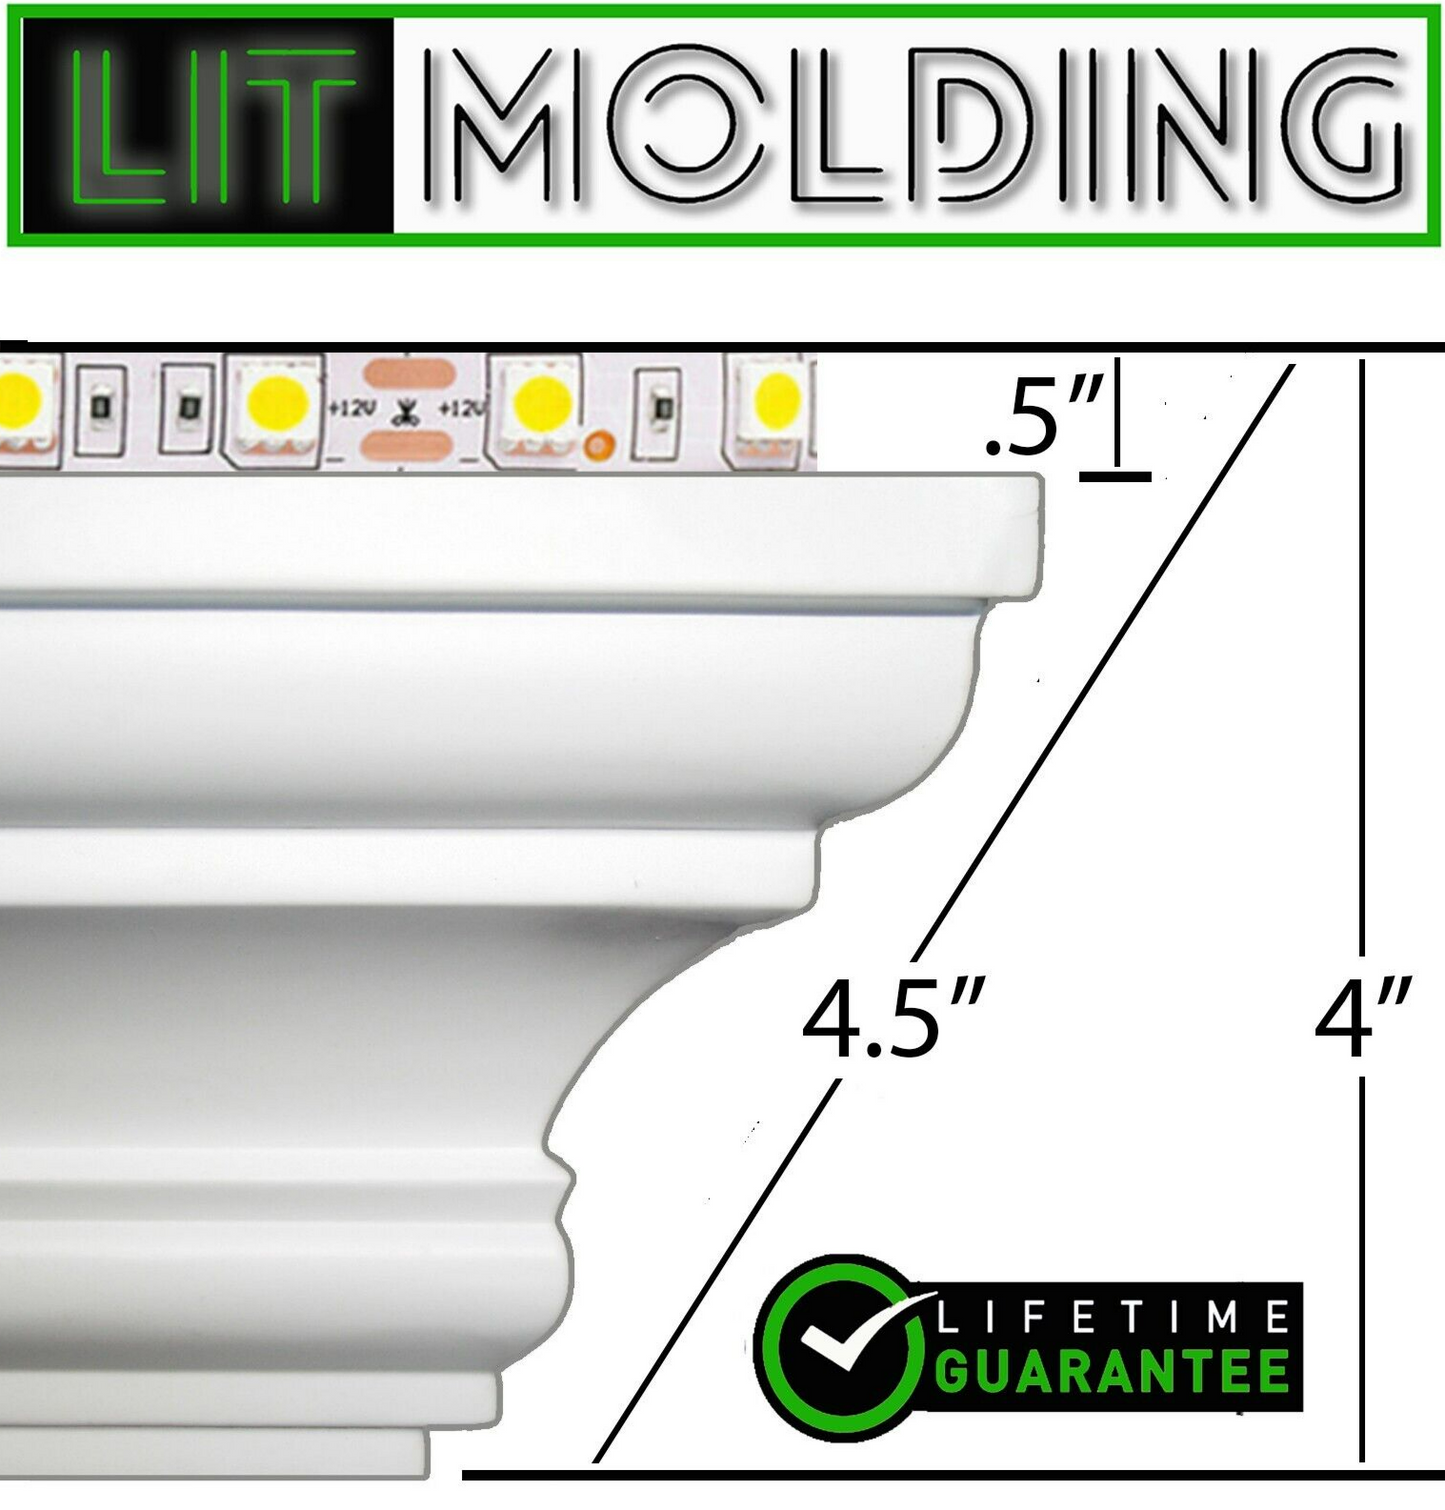 4.5" LIT Molding LED backlit crown molding 52' kit.